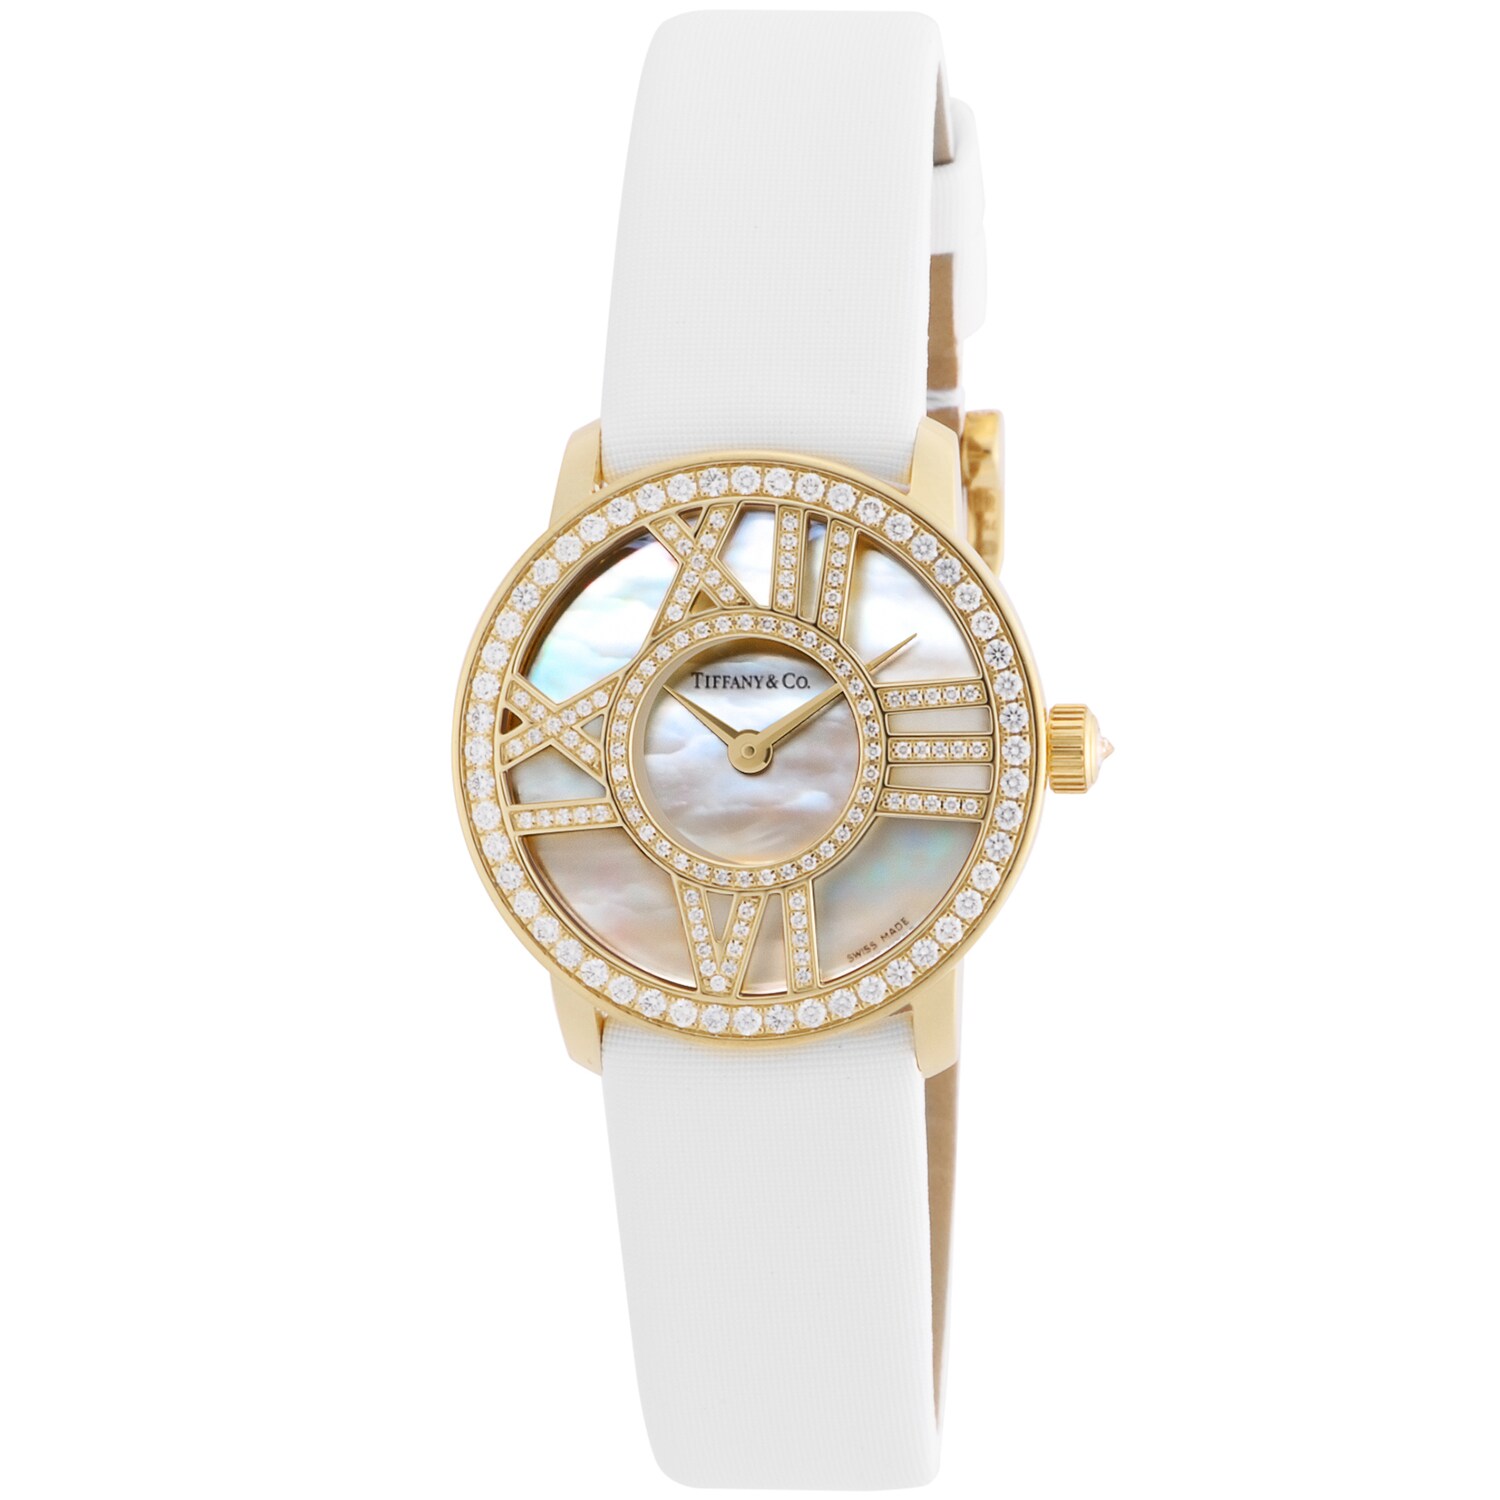 【ティファニー/Tiffany & Co.】ダイヤモンド186石使用腕時計/アトラス